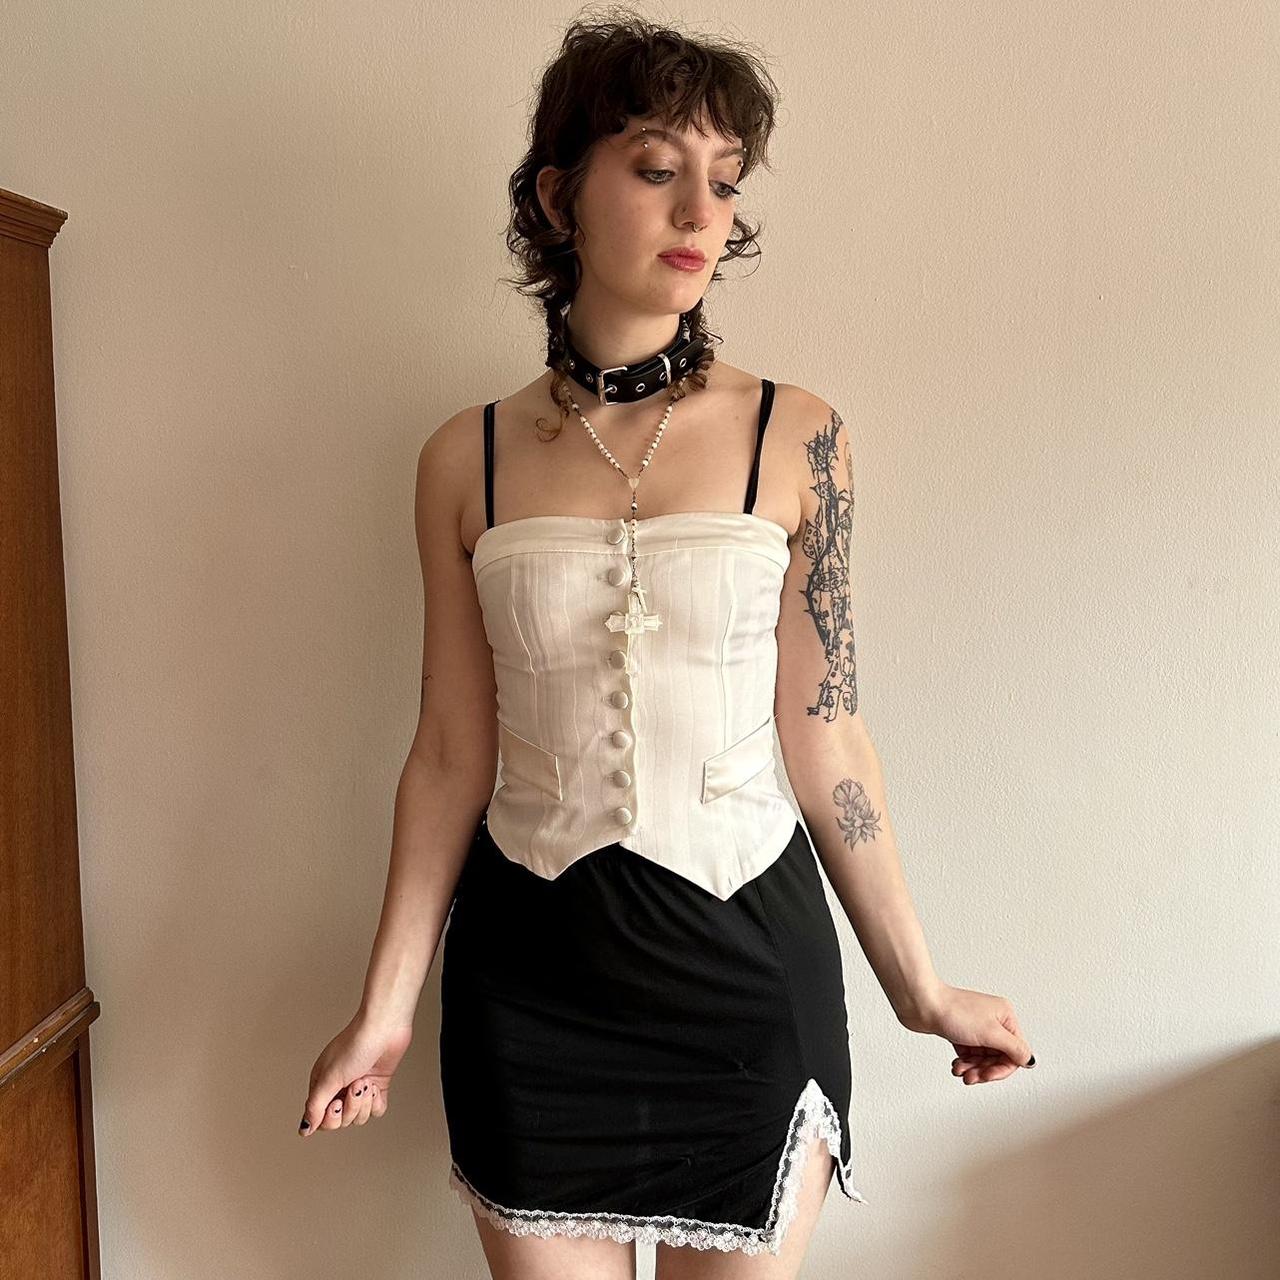 Dolly skirt 🧸 Adorable black mini skirt with white... - Depop